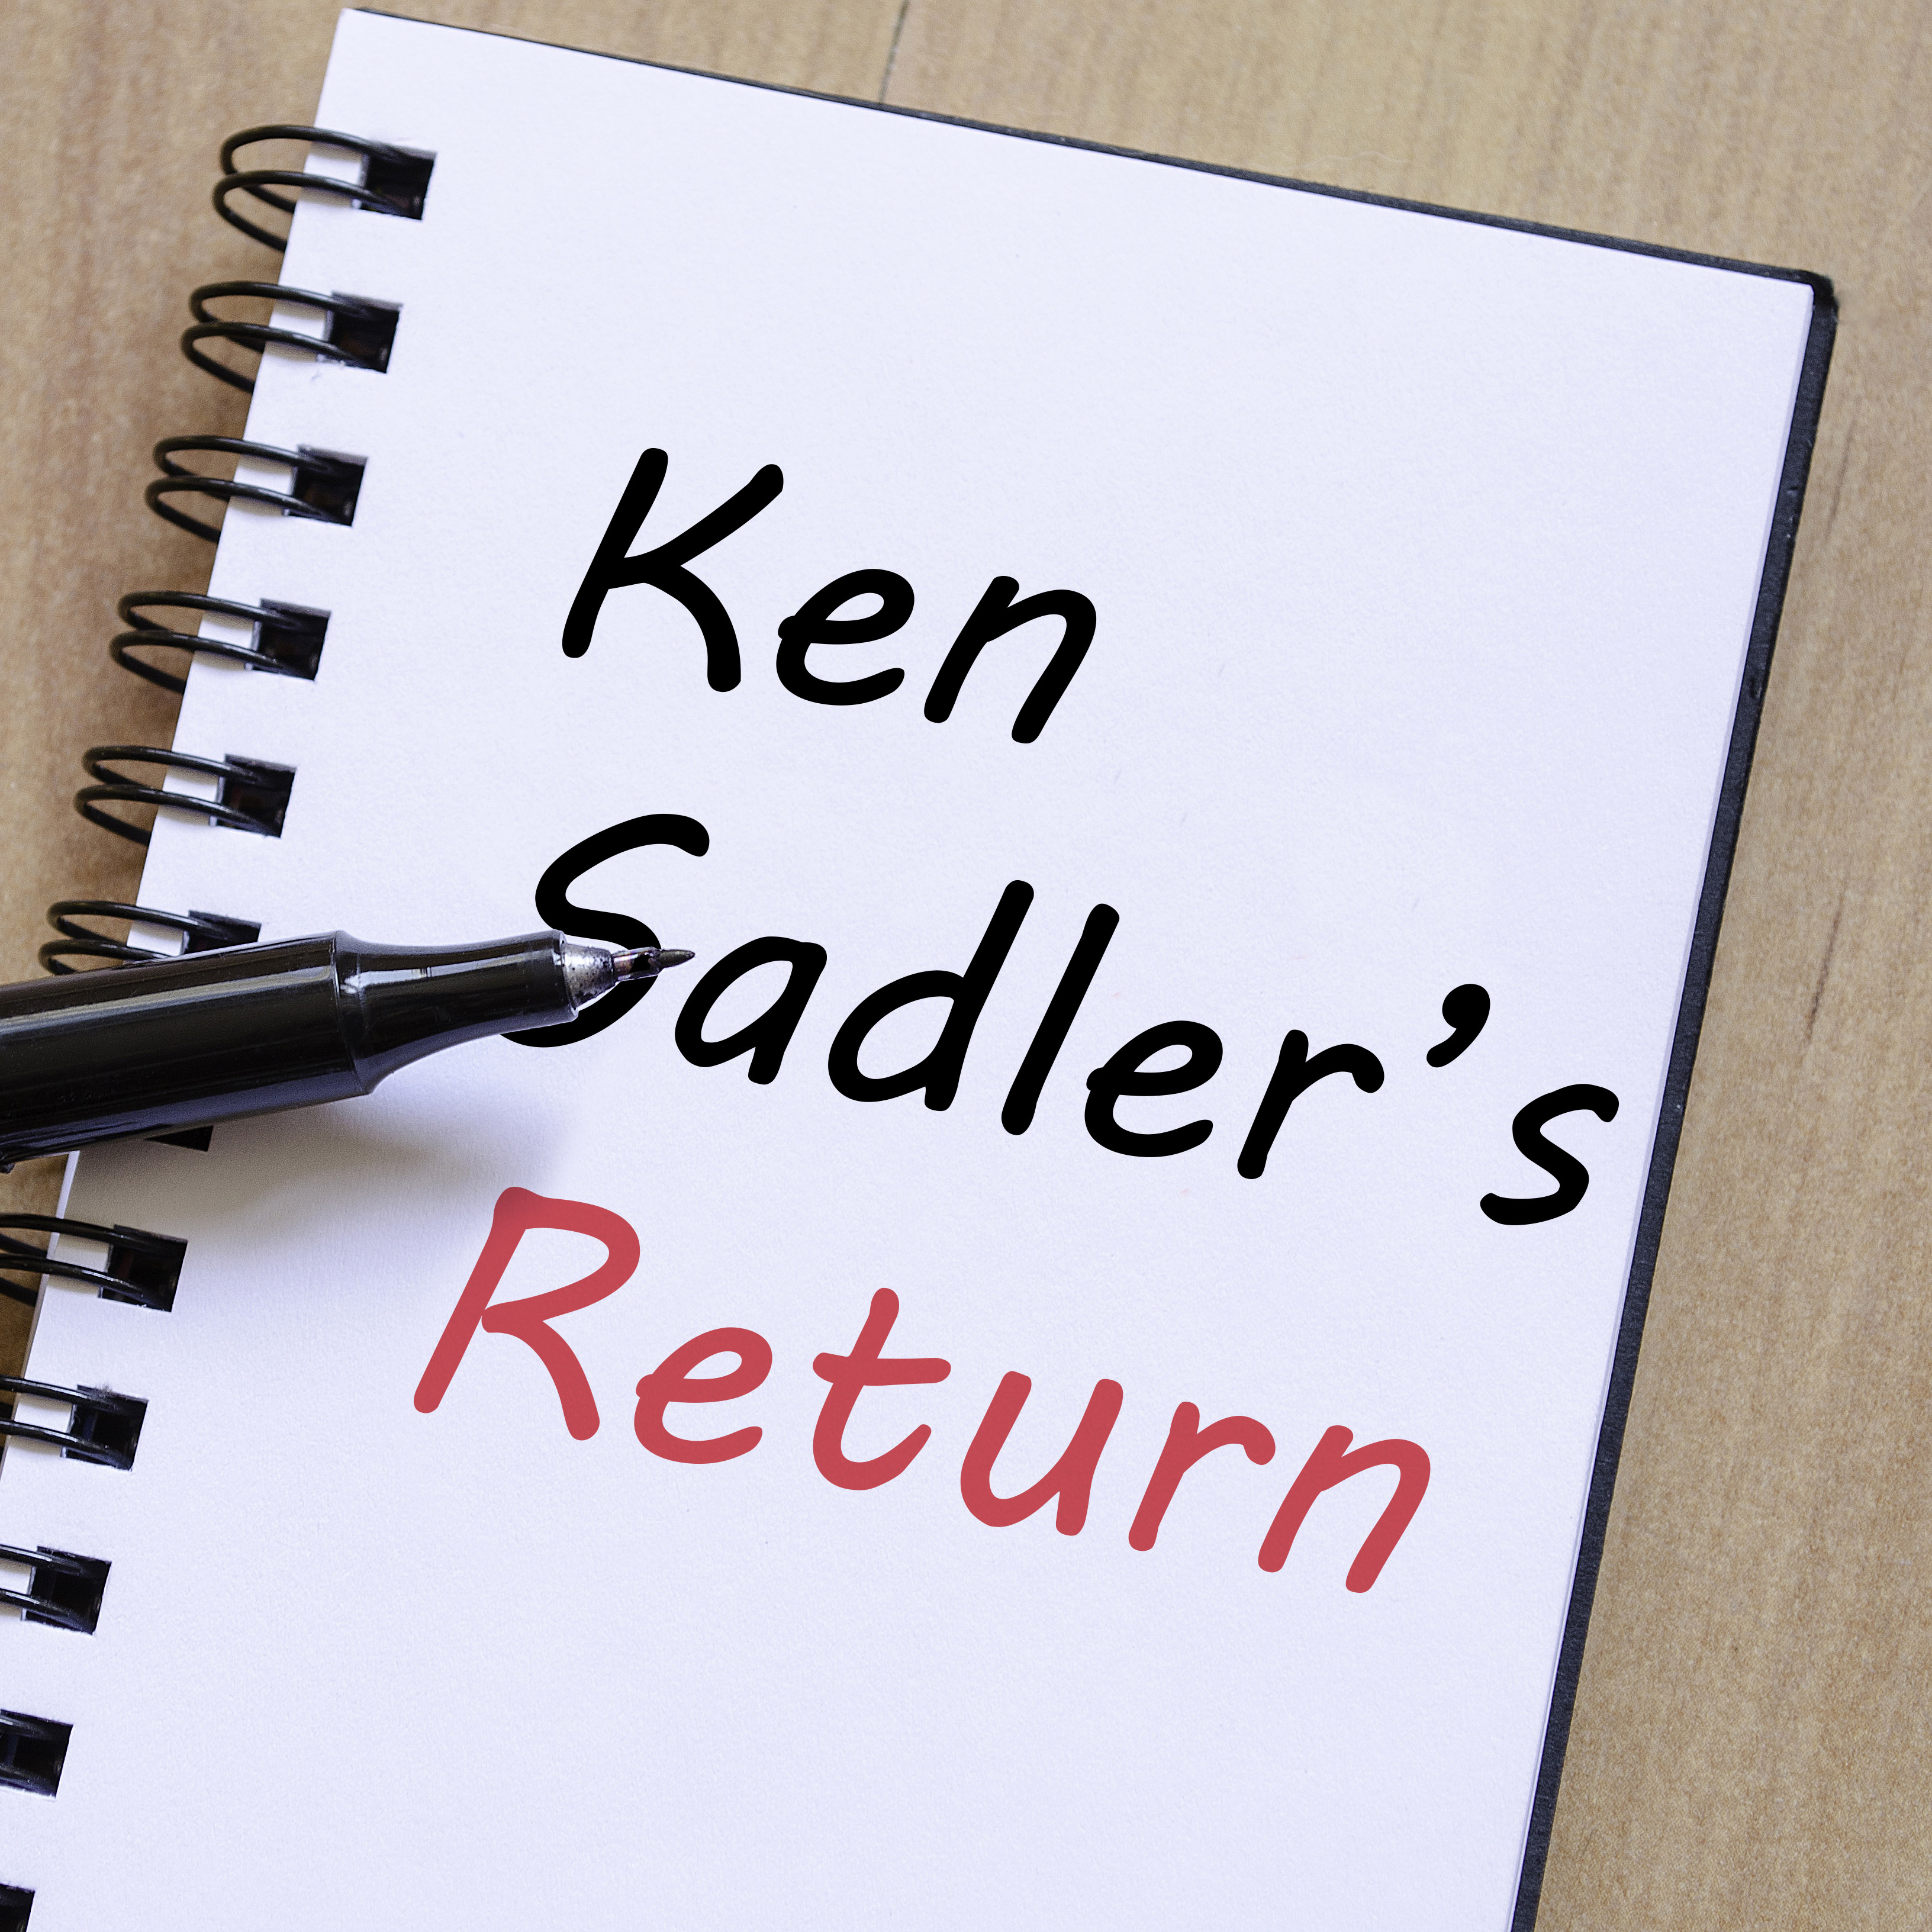 Ken saddler blog.jpg